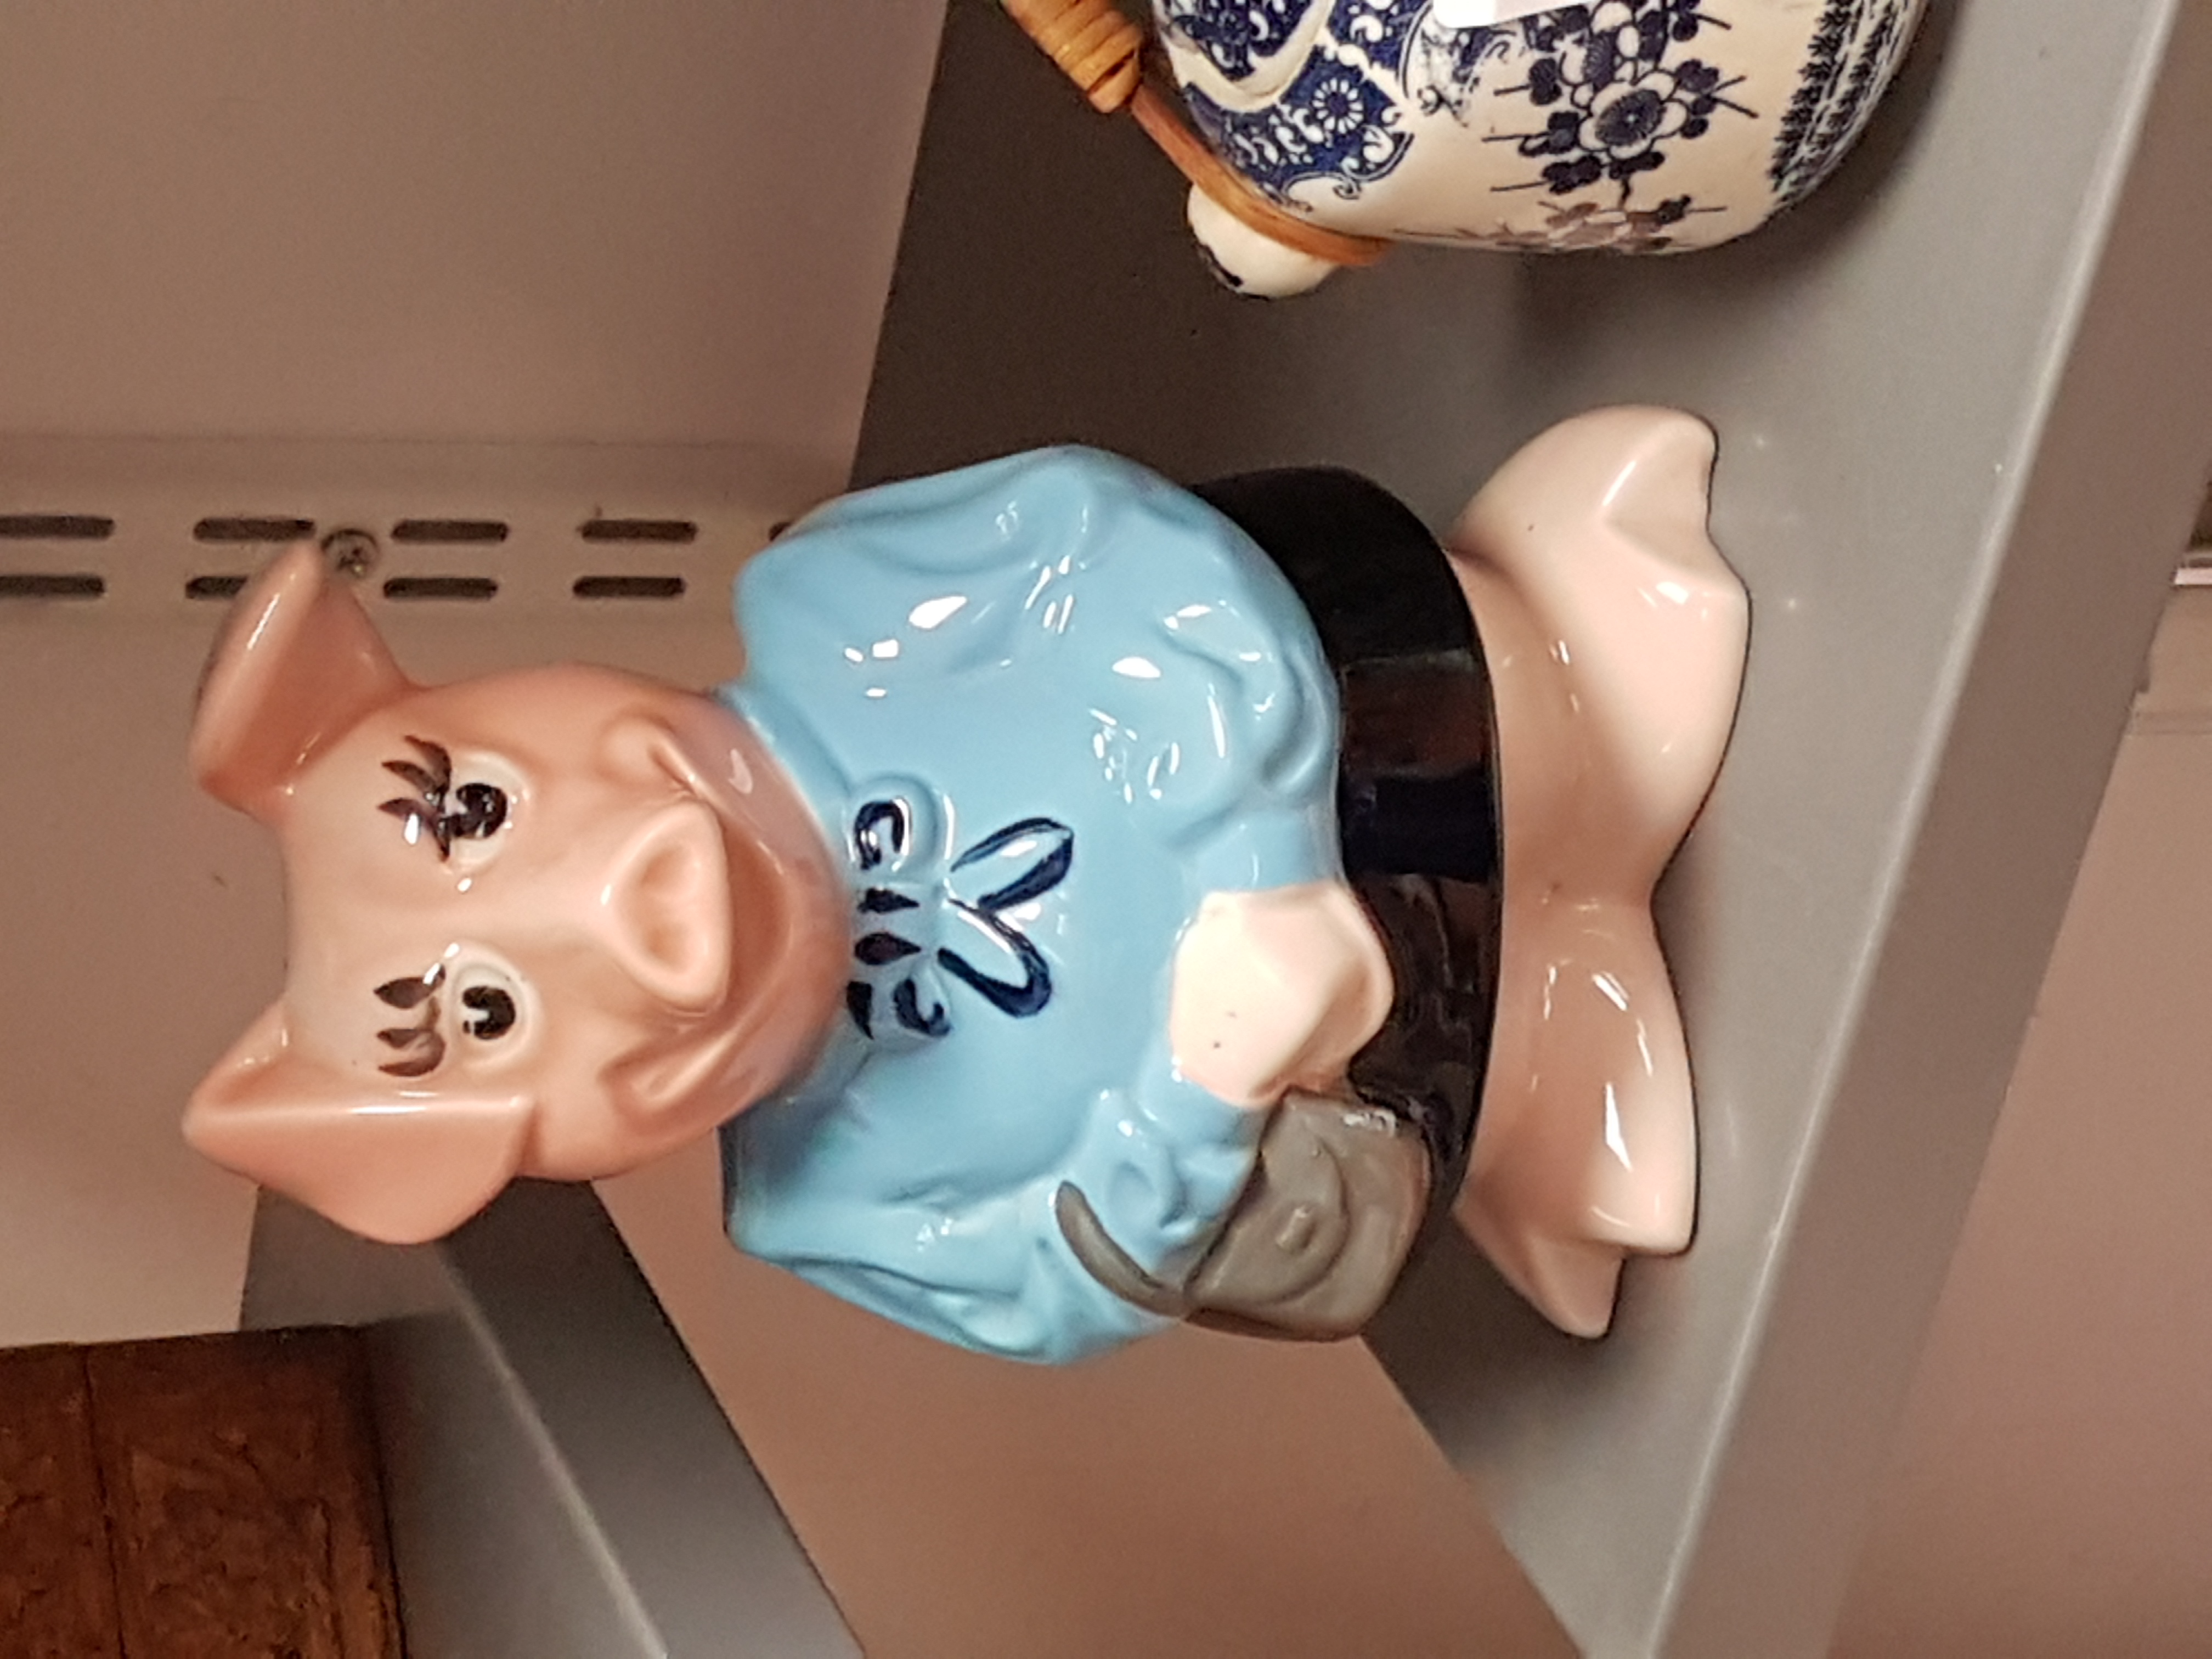 a ceramic pig figurine on a shelf